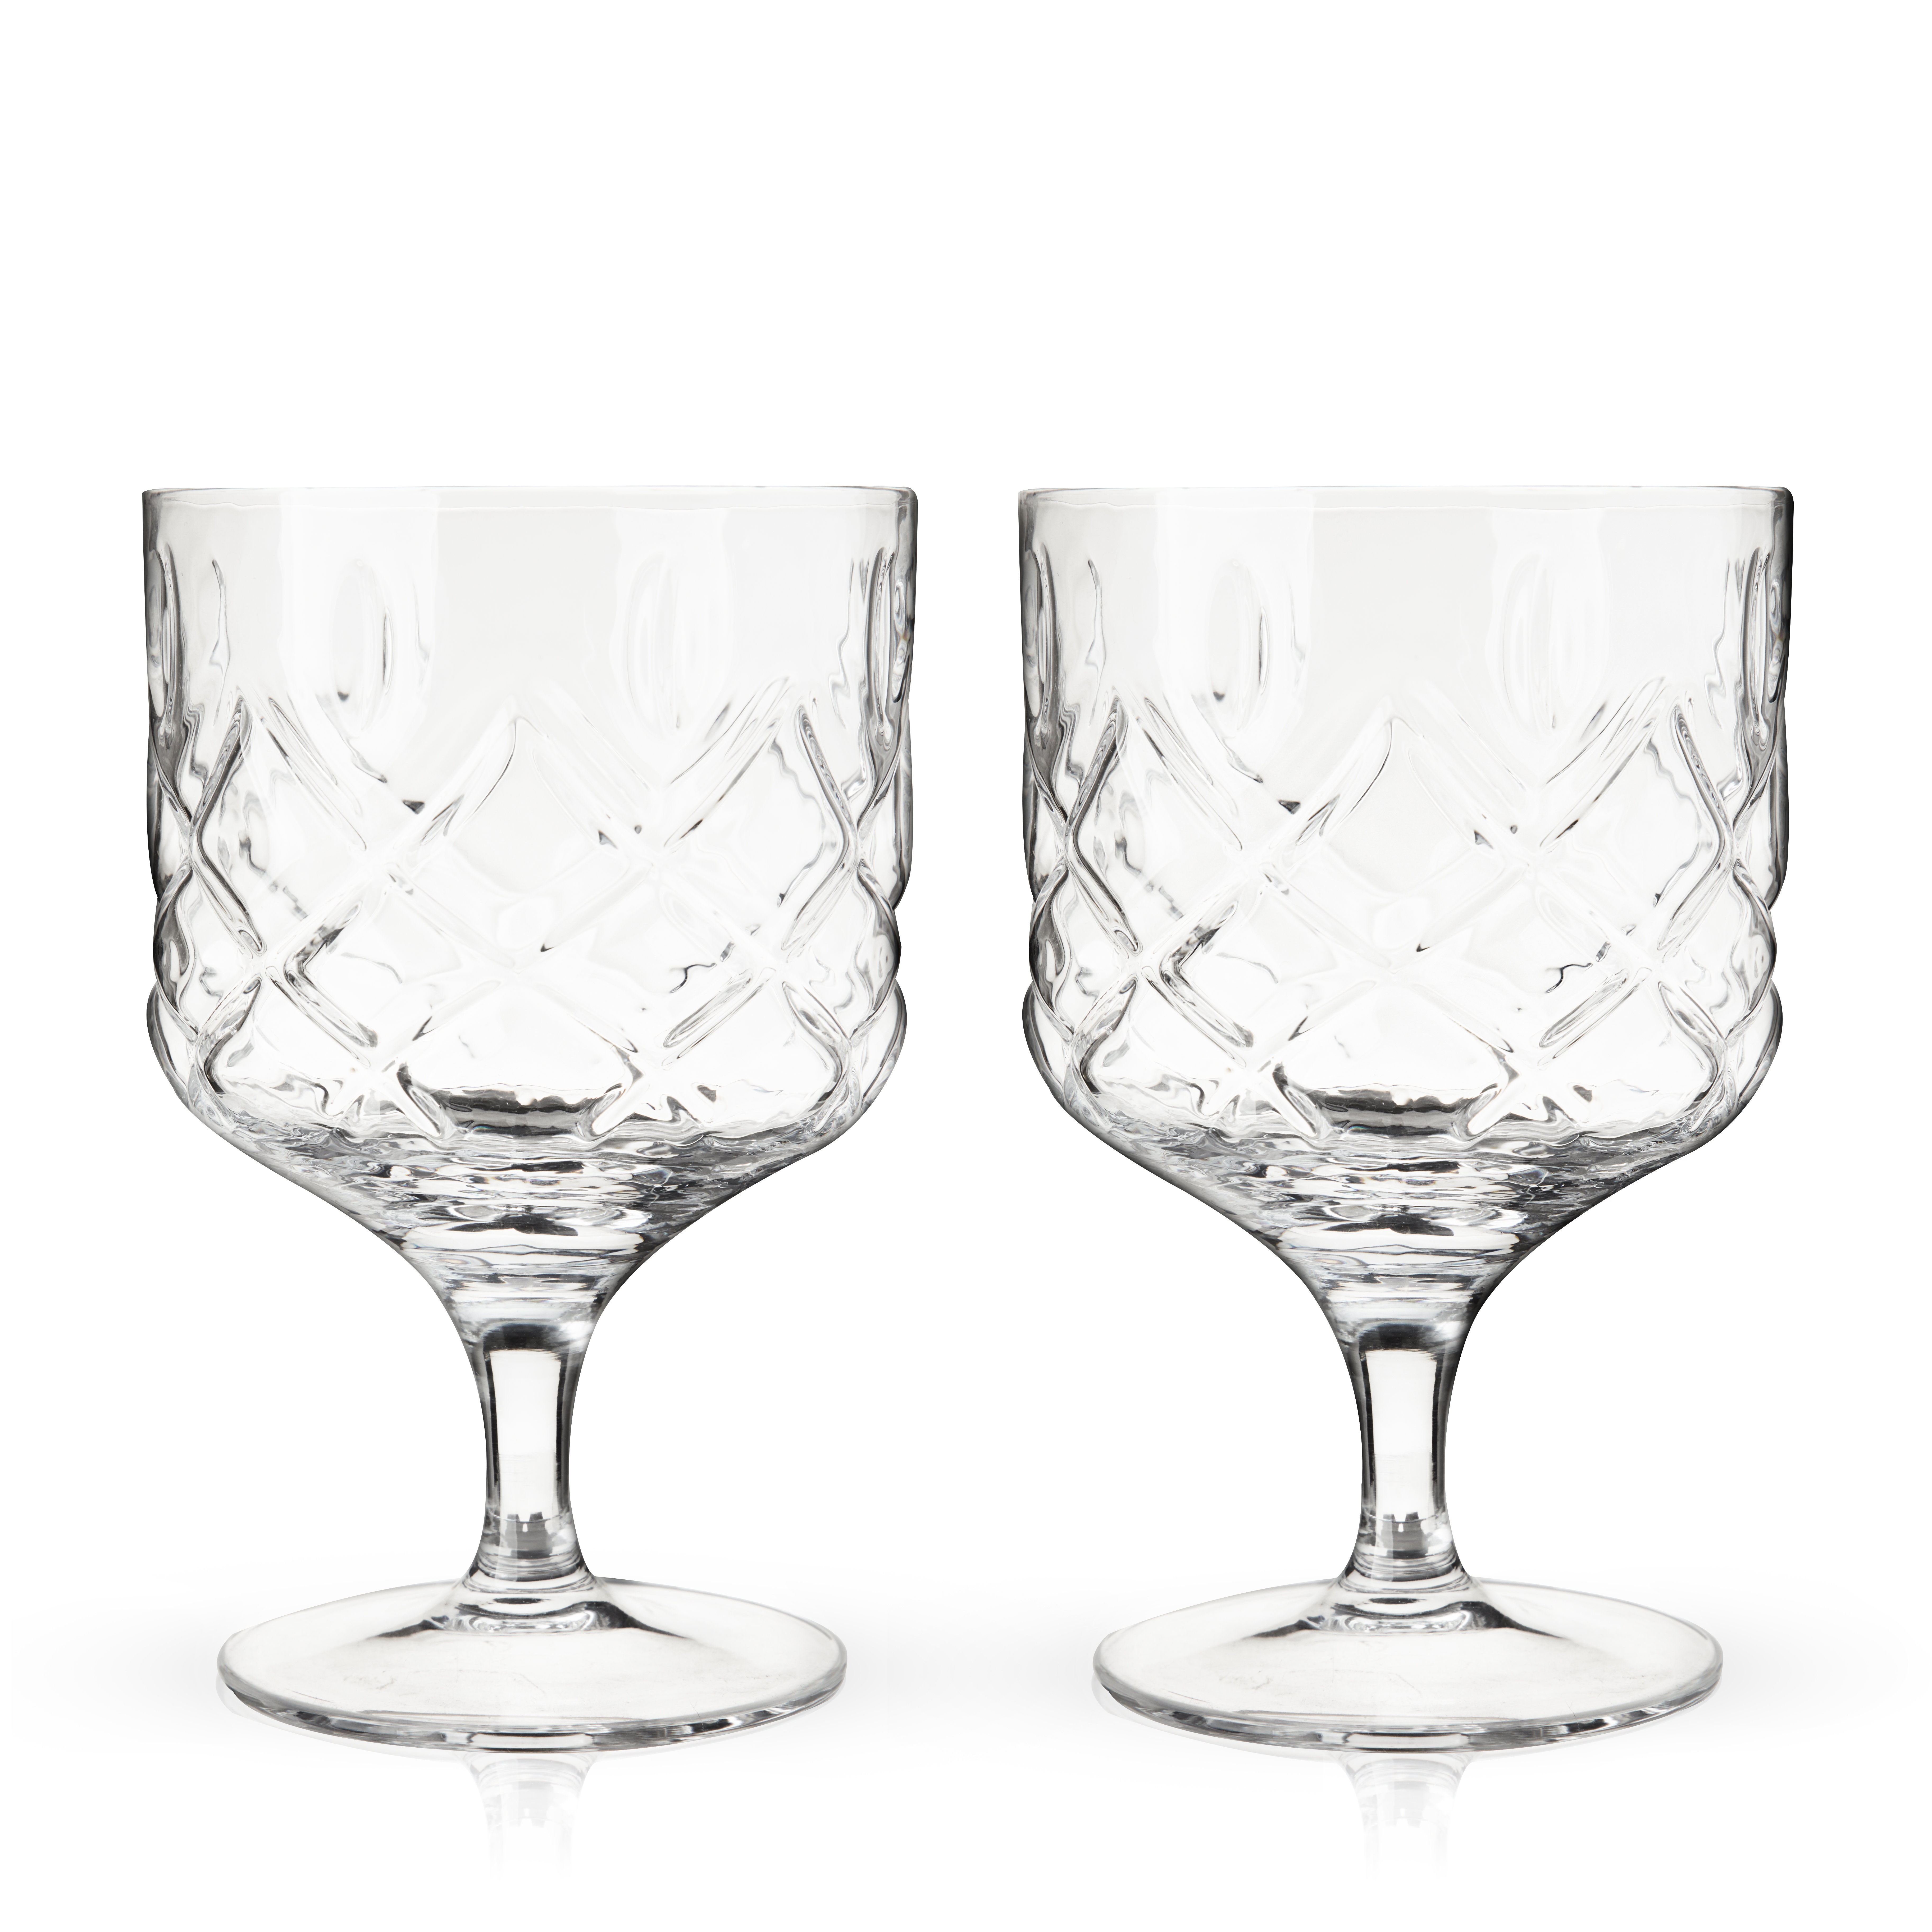 https://assets.wfcdn.com/im/40501495/compr-r85/1979/197962739/viski-admiral-stemmed-cocktail-glasses-faceted-lead-free-crystal-short-footed-coupes-for-bar-carts-9-oz-set-of-2.jpg